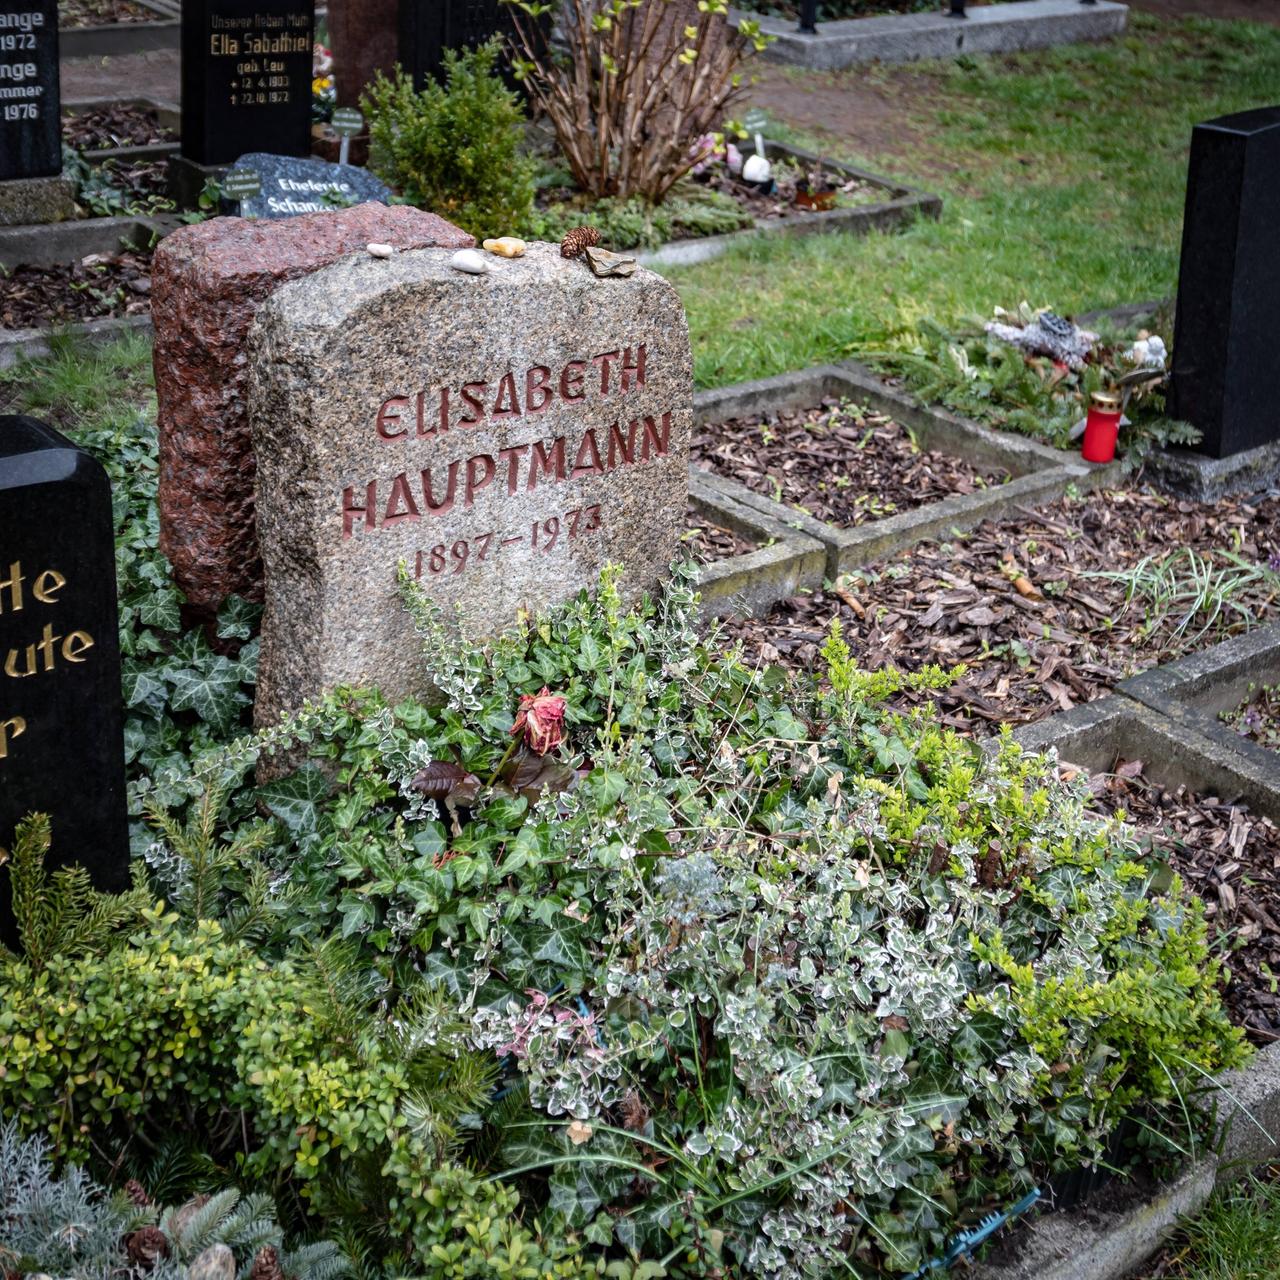 Das Grab von Elisabeth Hauptmann, Mitarbeiterin und Geliebte von Bertolt Bert, auf dem Friedhof Chausseestraße in Berlin